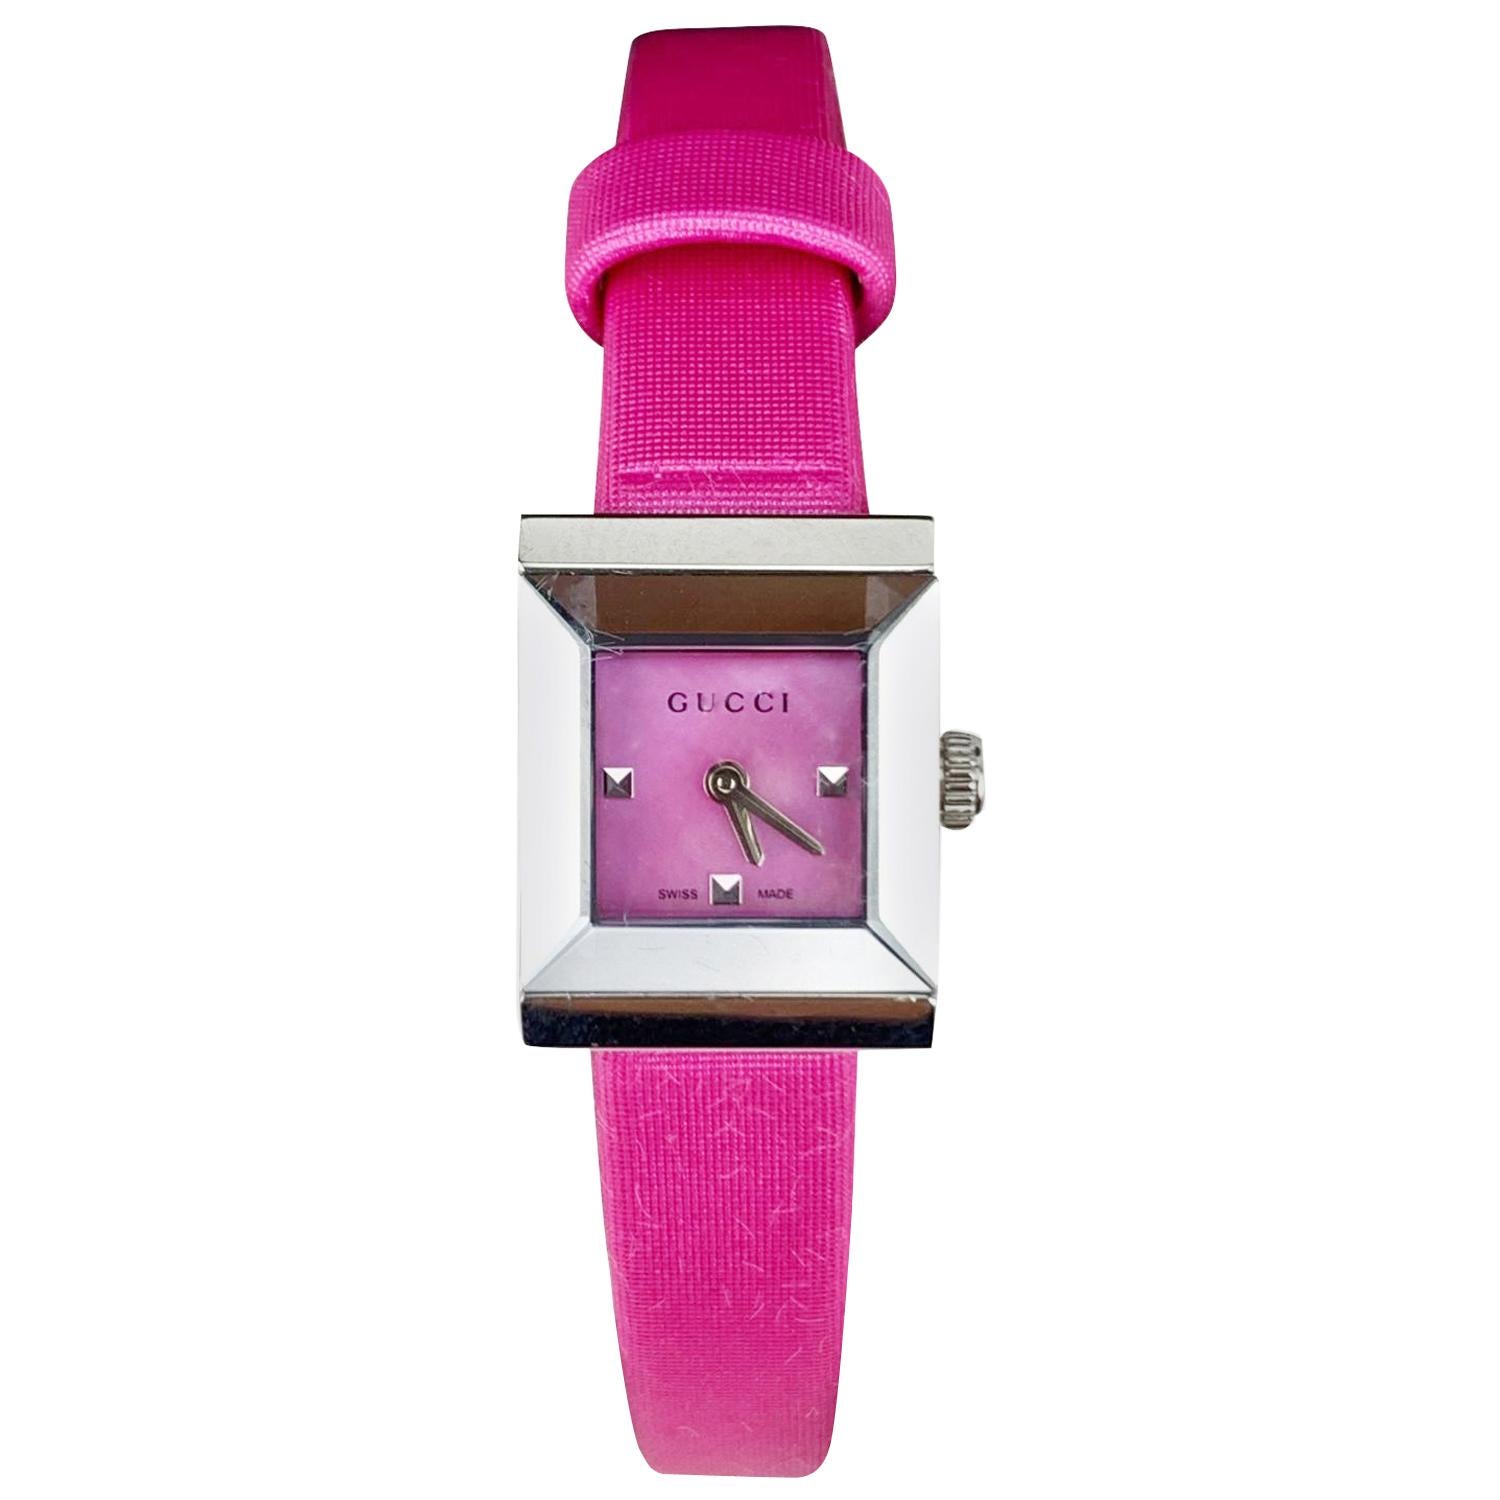 Gucci Pink Satin G Frame Ladies Watch 1285 Never Worn